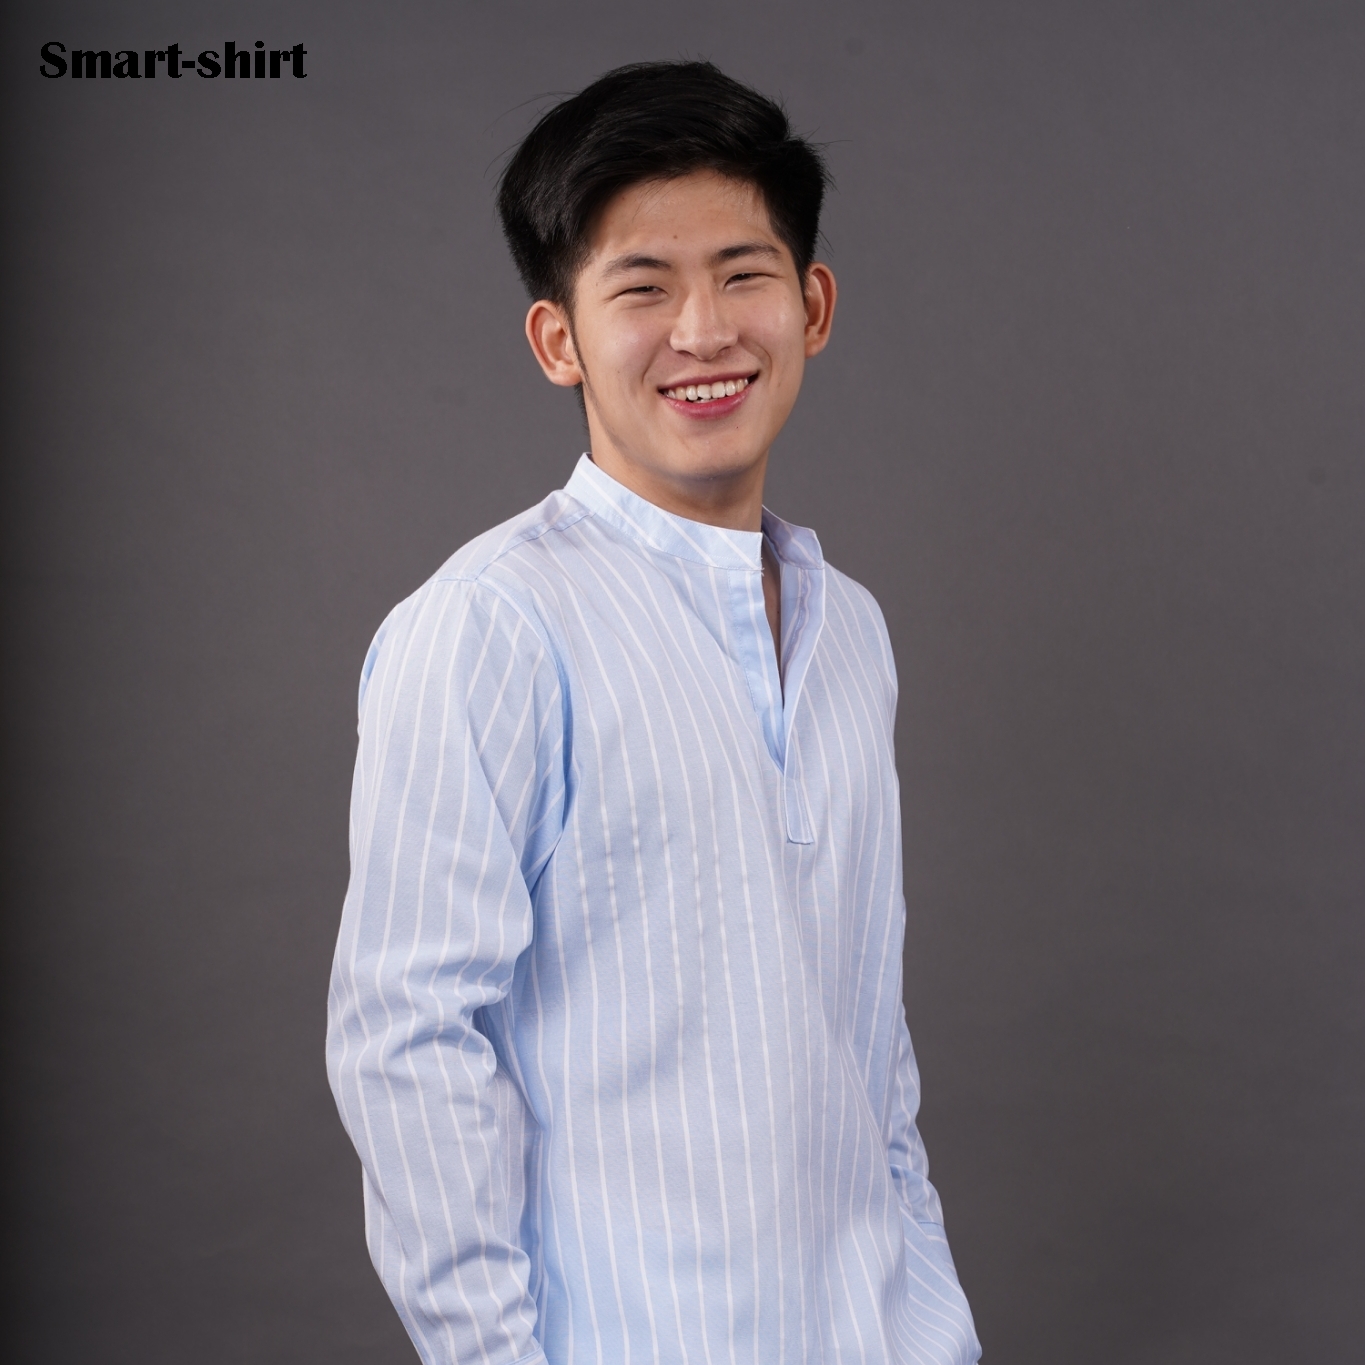 เชิ้ต Smart Shirt แบบผ่า คอจีน แขนยาว หลากหลายสี